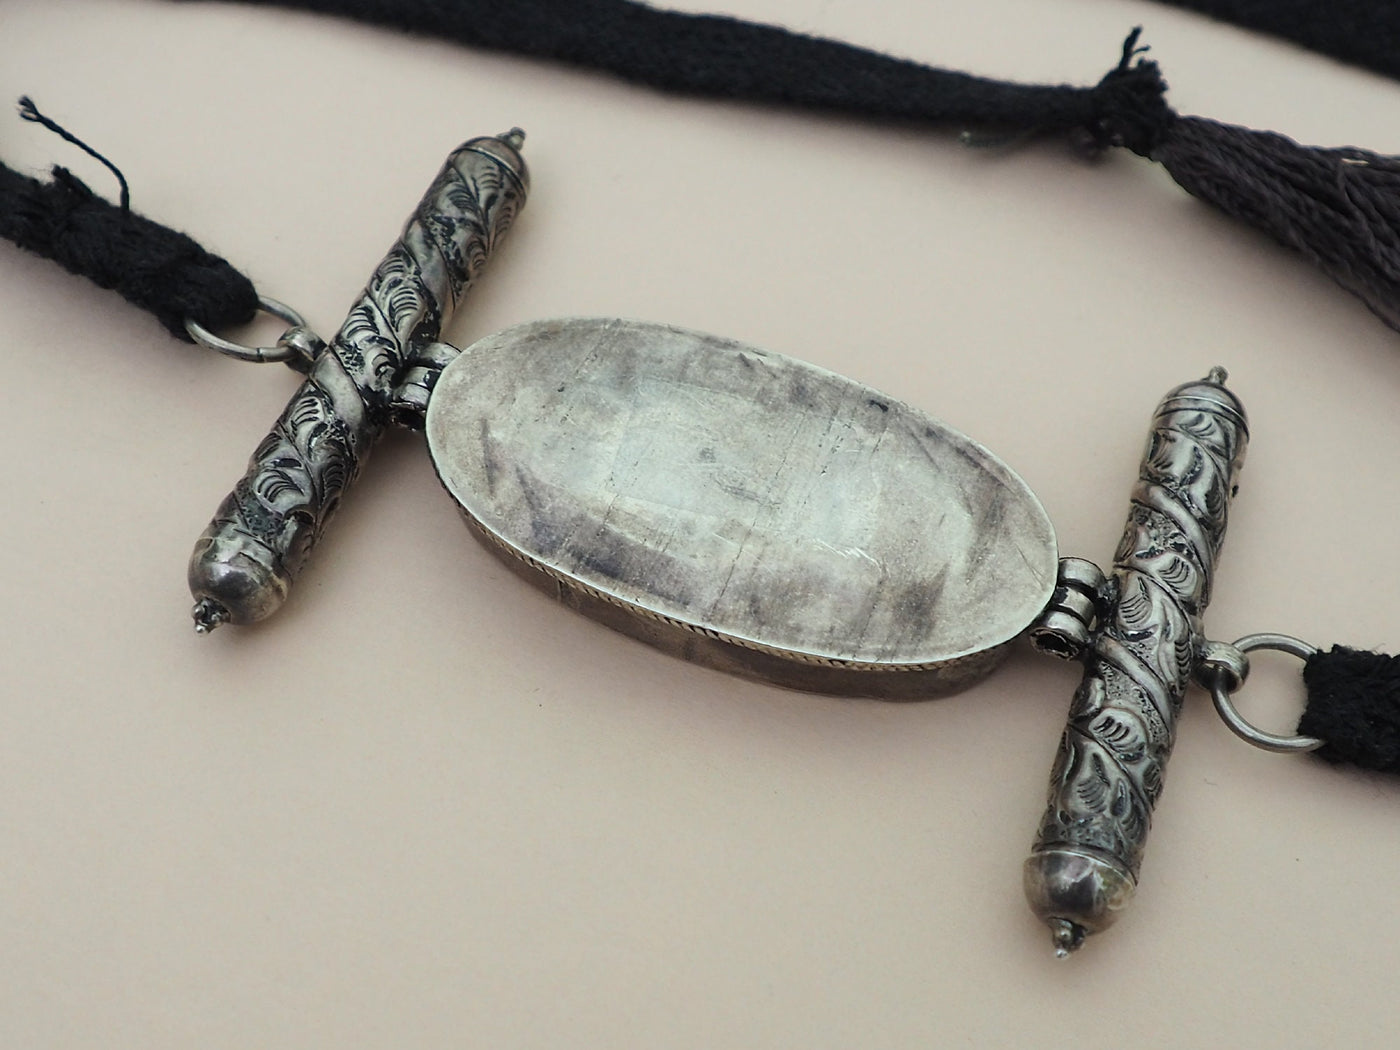 Antike Tibetische Armband oberarmband Amulett  Talisman Silber Anhänger Schmuck  Bazuband Oberarm Amulette Tibet Türkis 21/A  Orientsbazar   